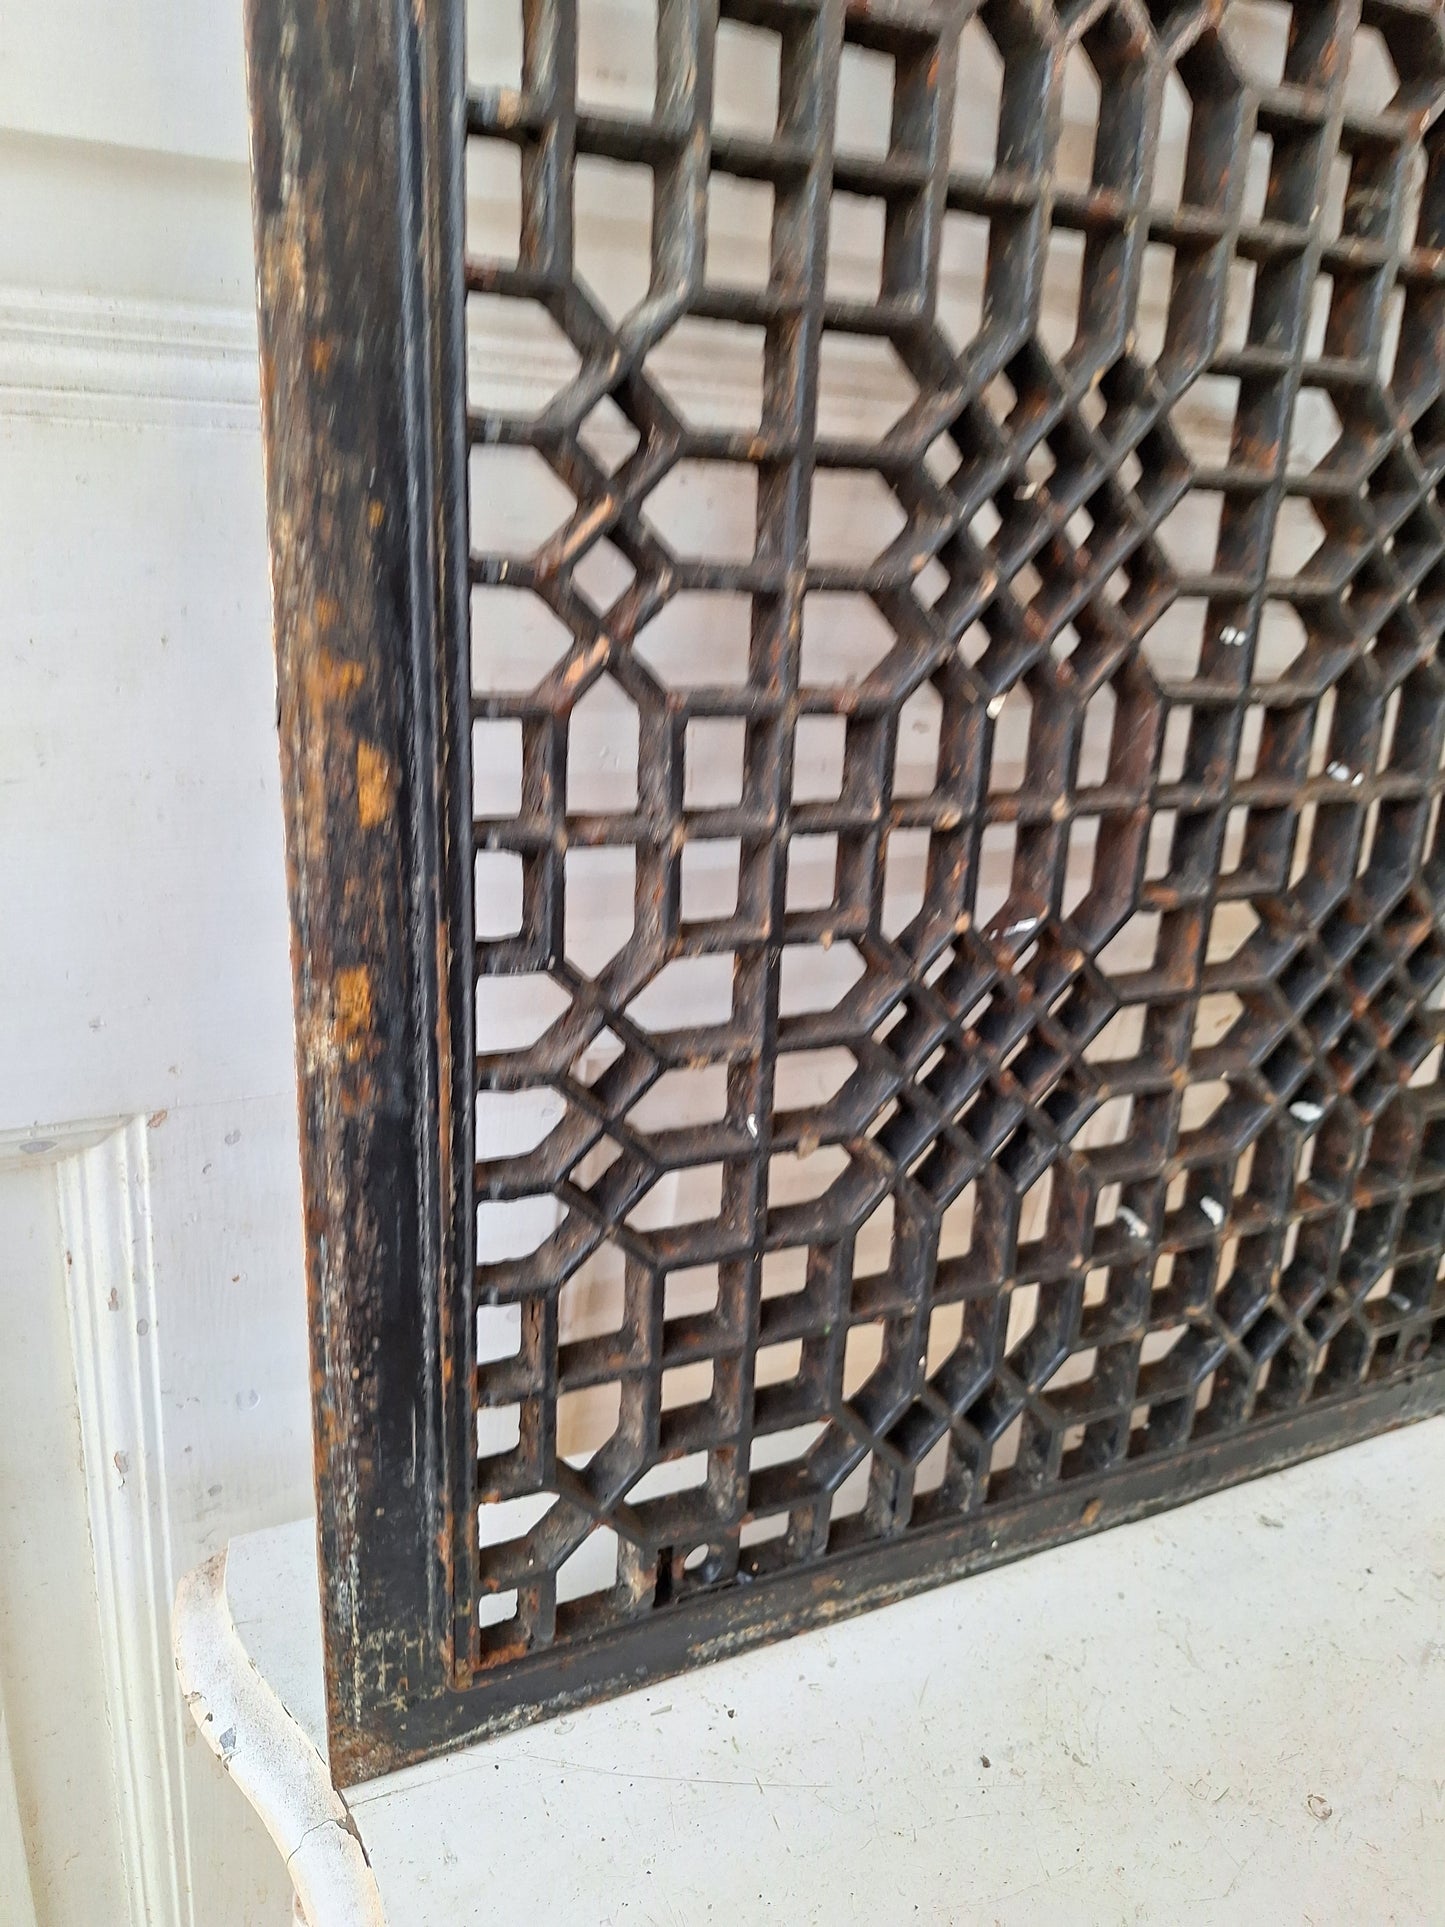 20 x 26 Antique Decorative Iron Floor Vent Cover, Black Iron Floor Grate #041601